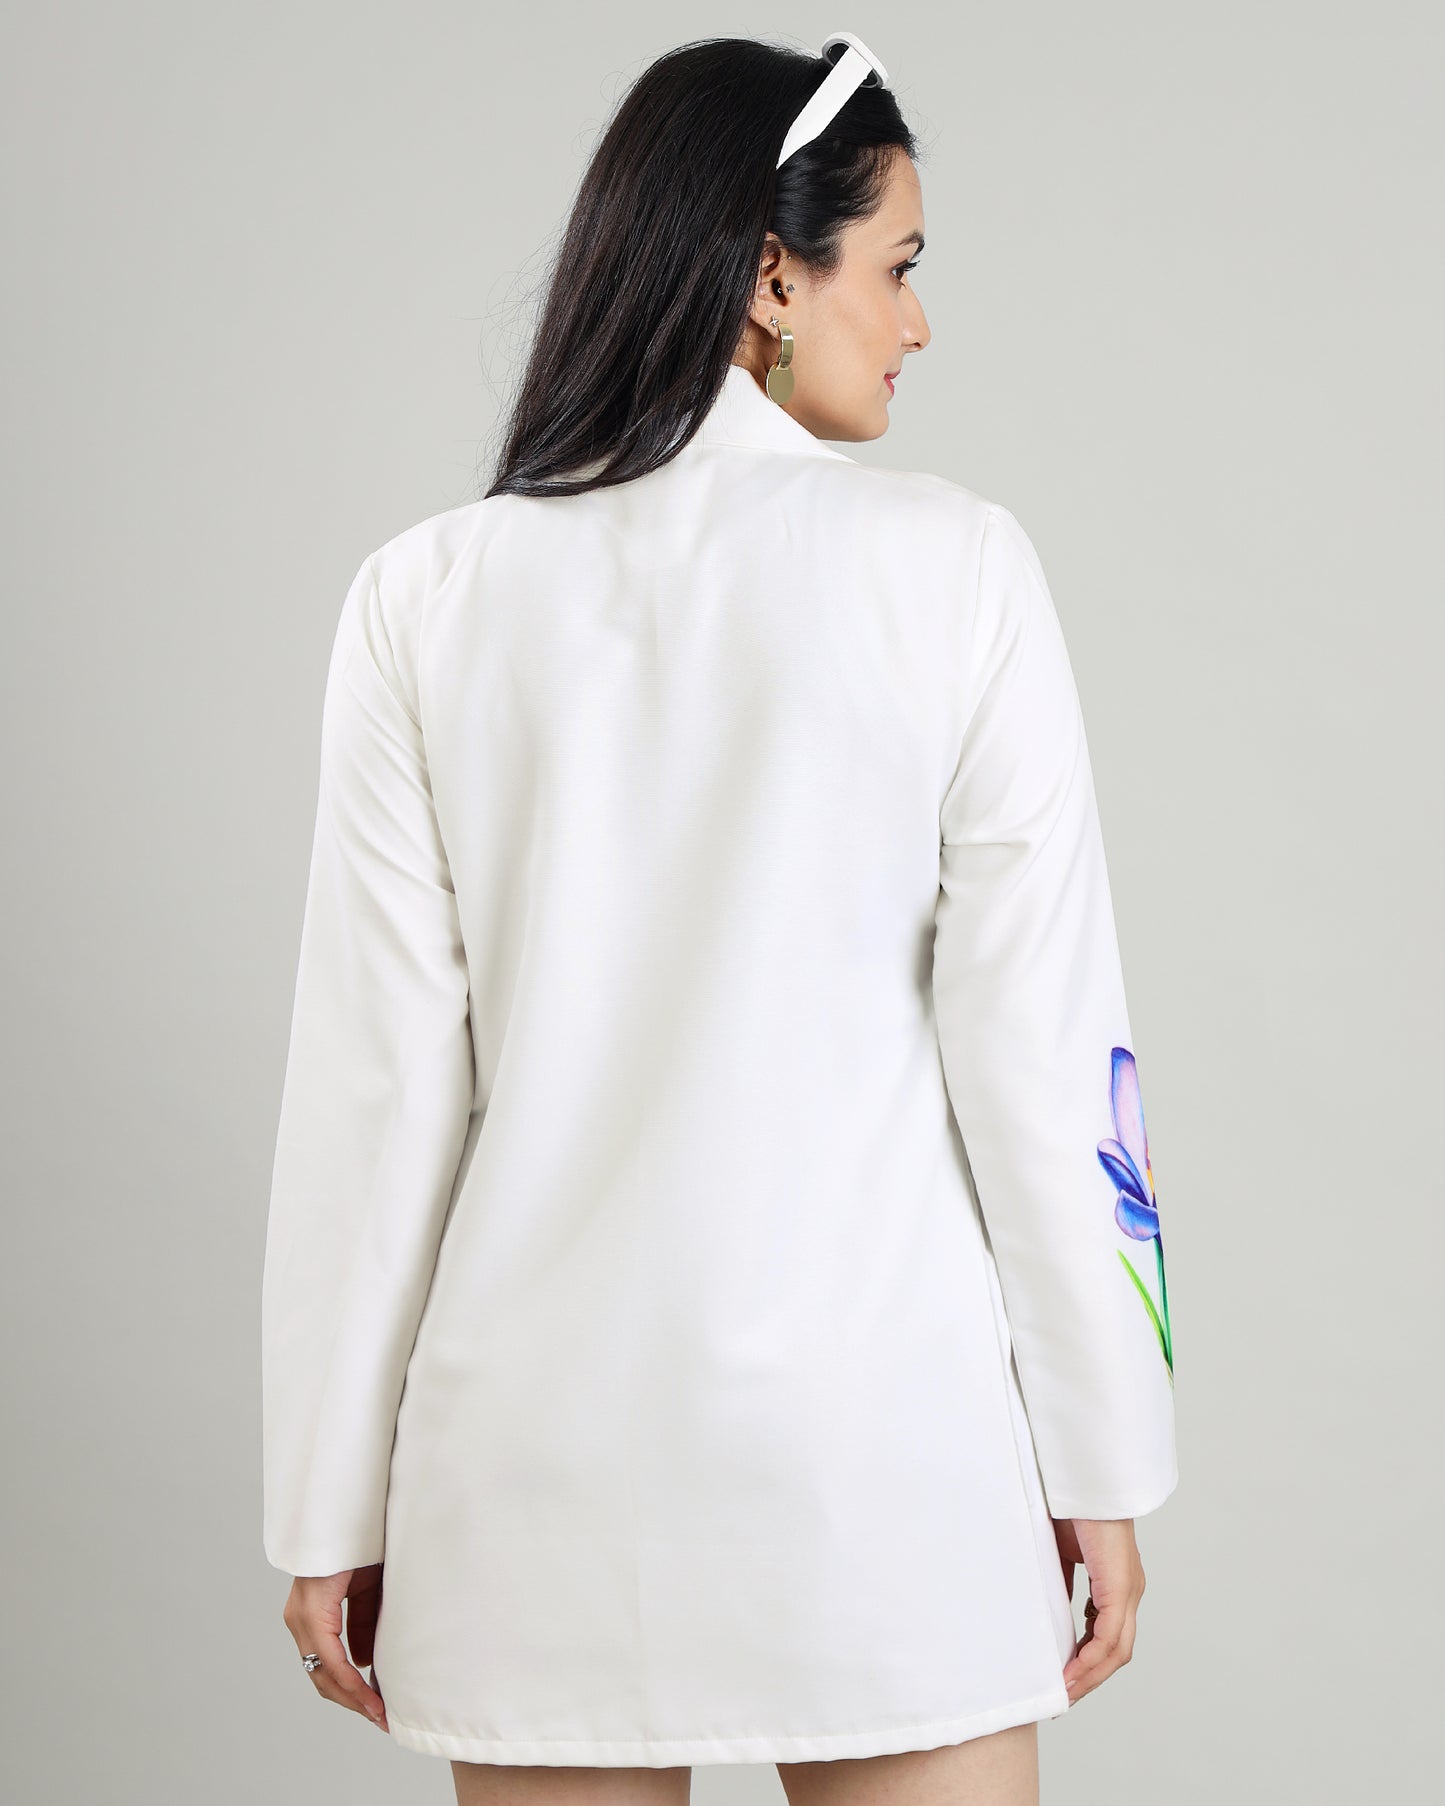 Strike A Pose: White Floral Chain Print Jacket